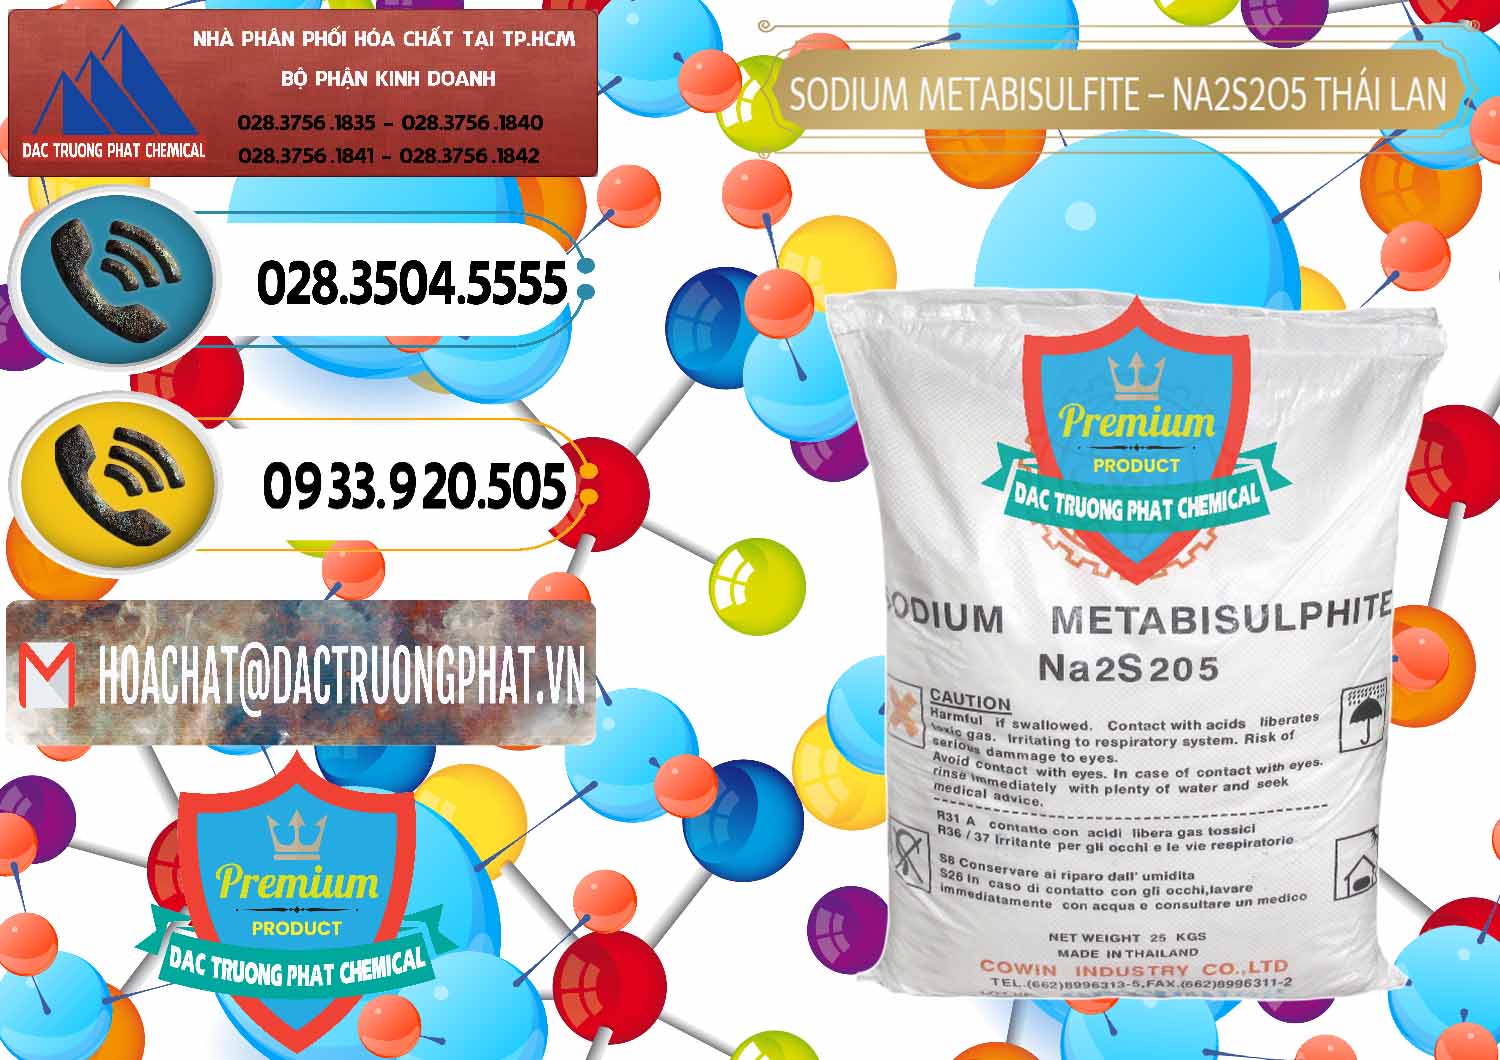 Đơn vị bán và cung cấp Sodium Metabisulfite - NA2S2O5 Thái Lan Cowin - 0145 - Chuyên bán ( phân phối ) hóa chất tại TP.HCM - hoachatdetnhuom.vn